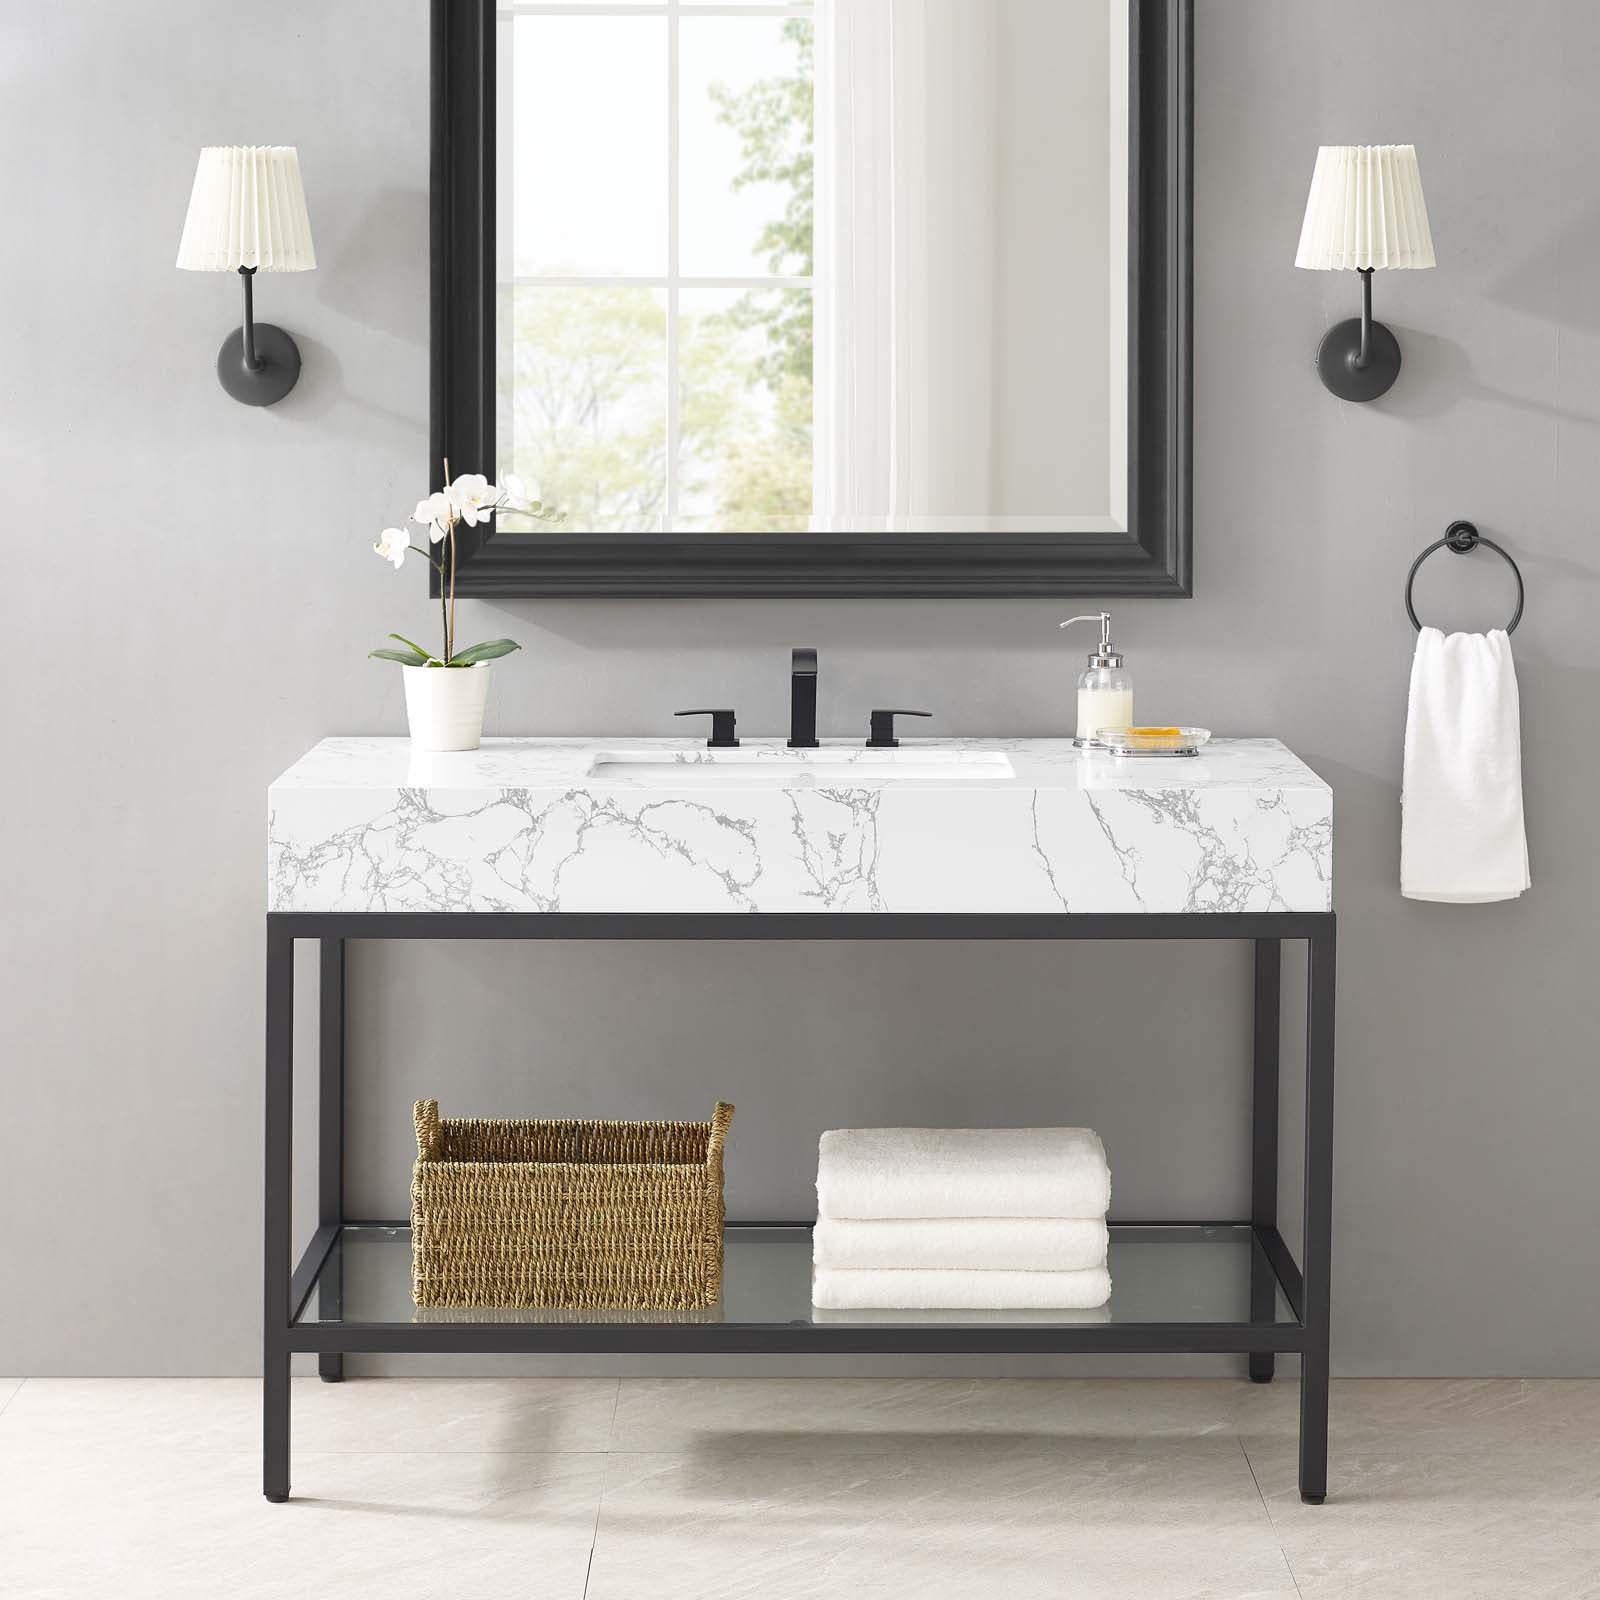 Kingsley 50" Black Stainless Steel Bathroom Vanity-Bathroom Vanity-Modway-Wall2Wall Furnishings